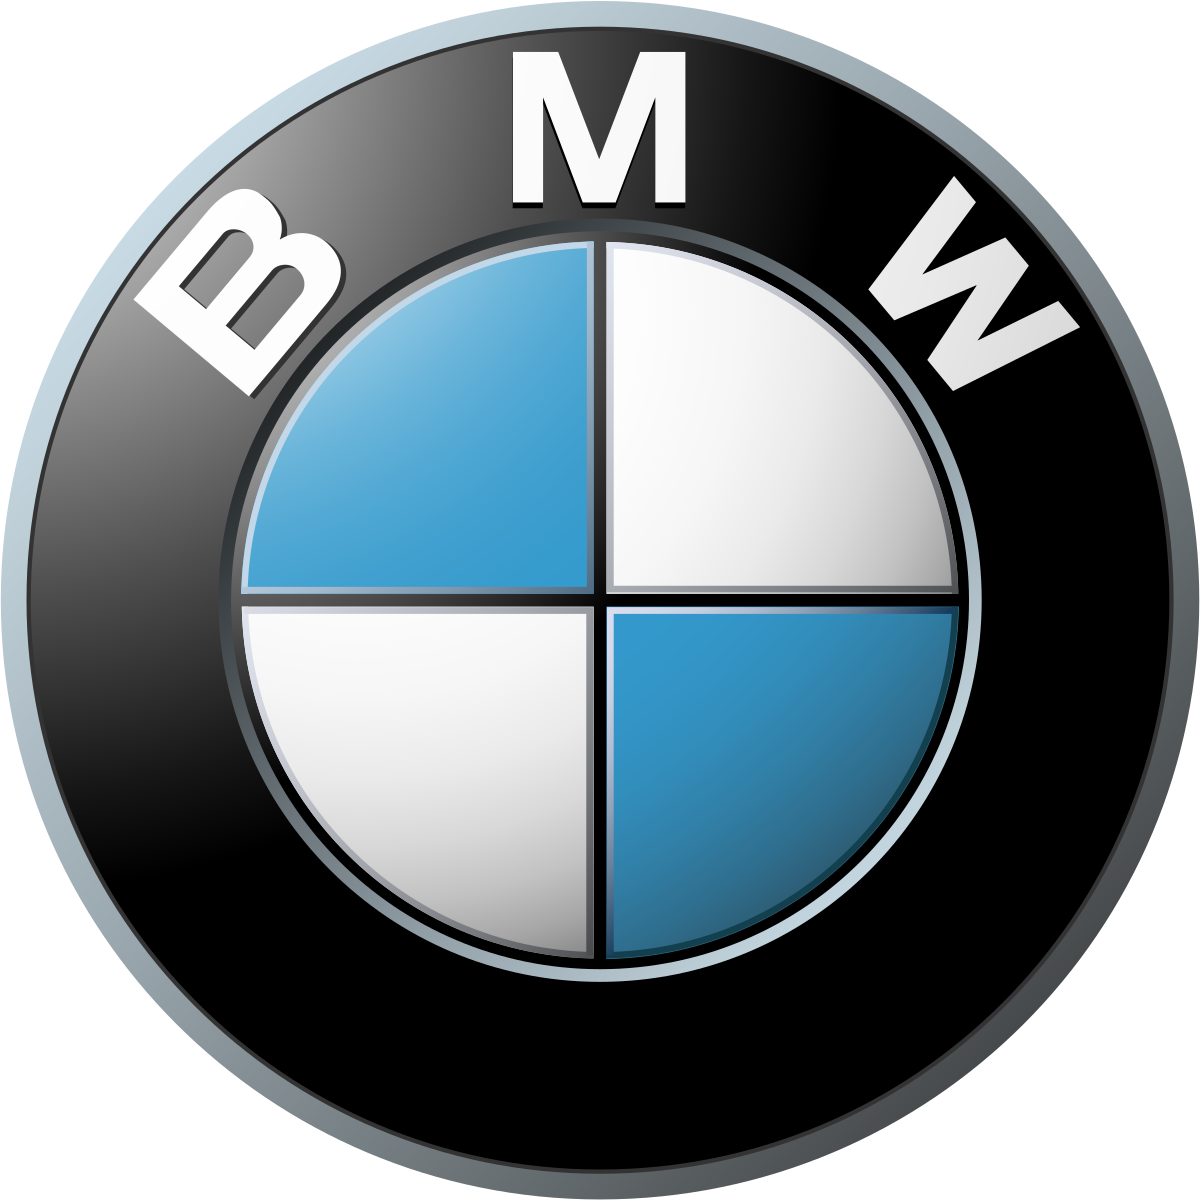 AUPESAN - CONCESIONARIO BMW (MURCIA) - Estructuras metálicas, construcción de estructuras metálicas, construcción de naves industriales, construcciones industriales